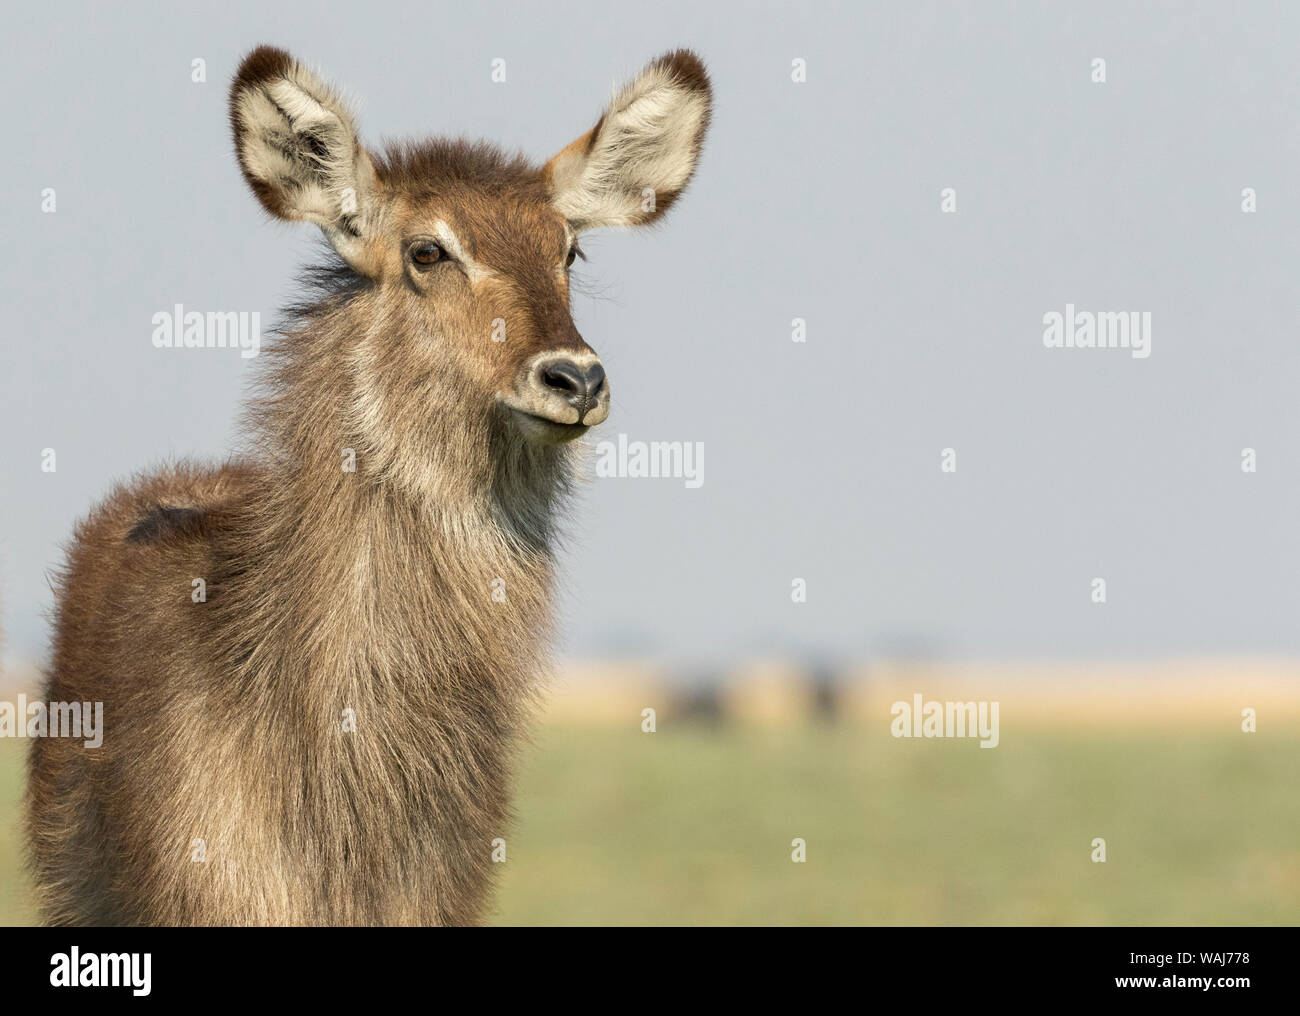 África, Botswana, el Parque Nacional Chobe. Antelope común cerca. Crédito: Wendy Kaveney Jaynes / Galería / DanitaDelimont.com Foto de stock